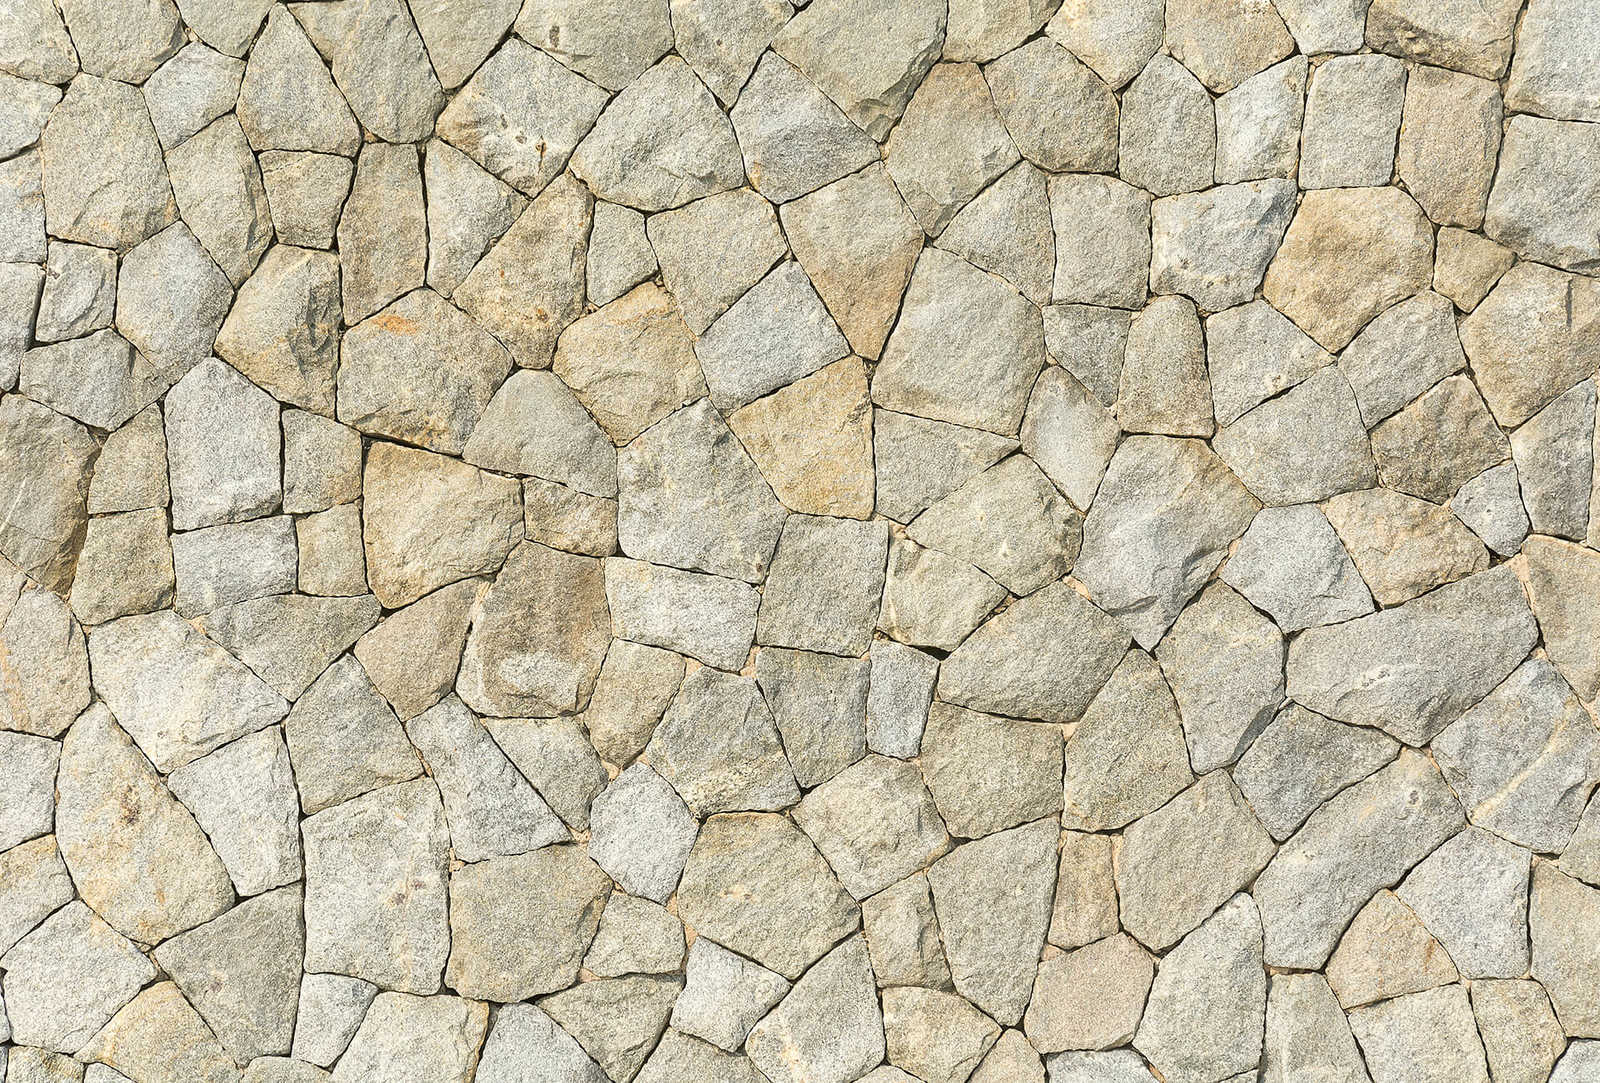         Photo wallpaper 3D natural stone look wall - grey
    